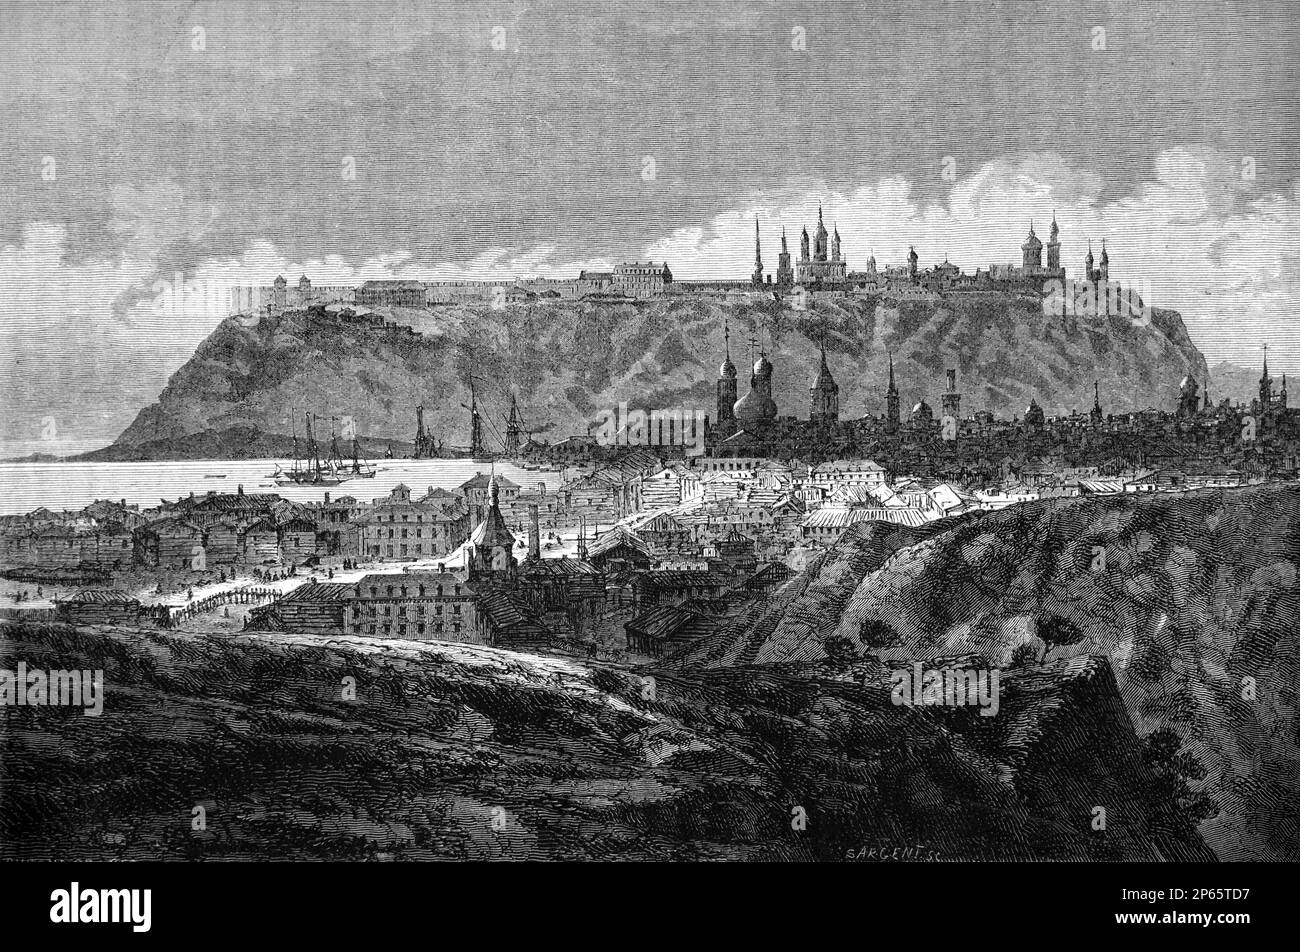 Vue de Tobolsk au confluent des rivières Tobol et Irtysh, oblast de Tyumen en Sibérie Russie. Gravure ancienne ou illustration 1862 Banque D'Images